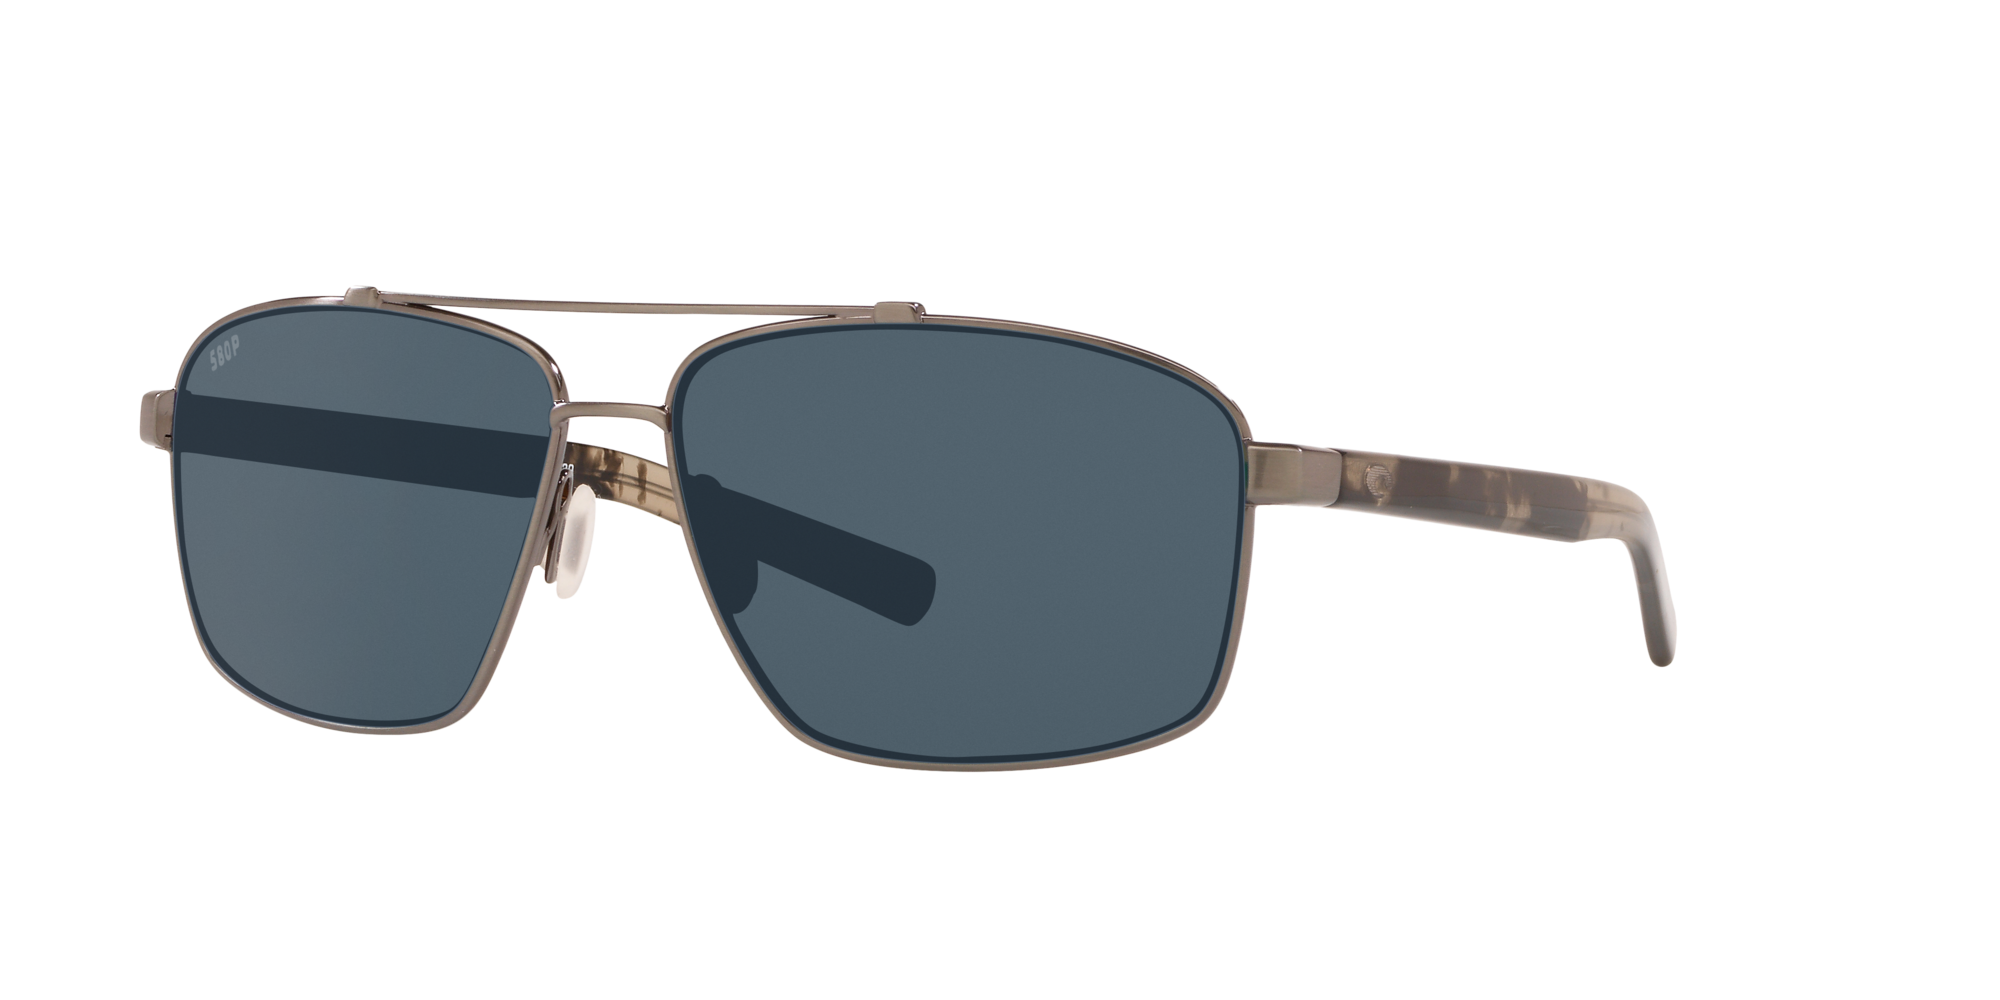 colors G&G Premium Mirror Aviator Sunglasses Spring Hinge 